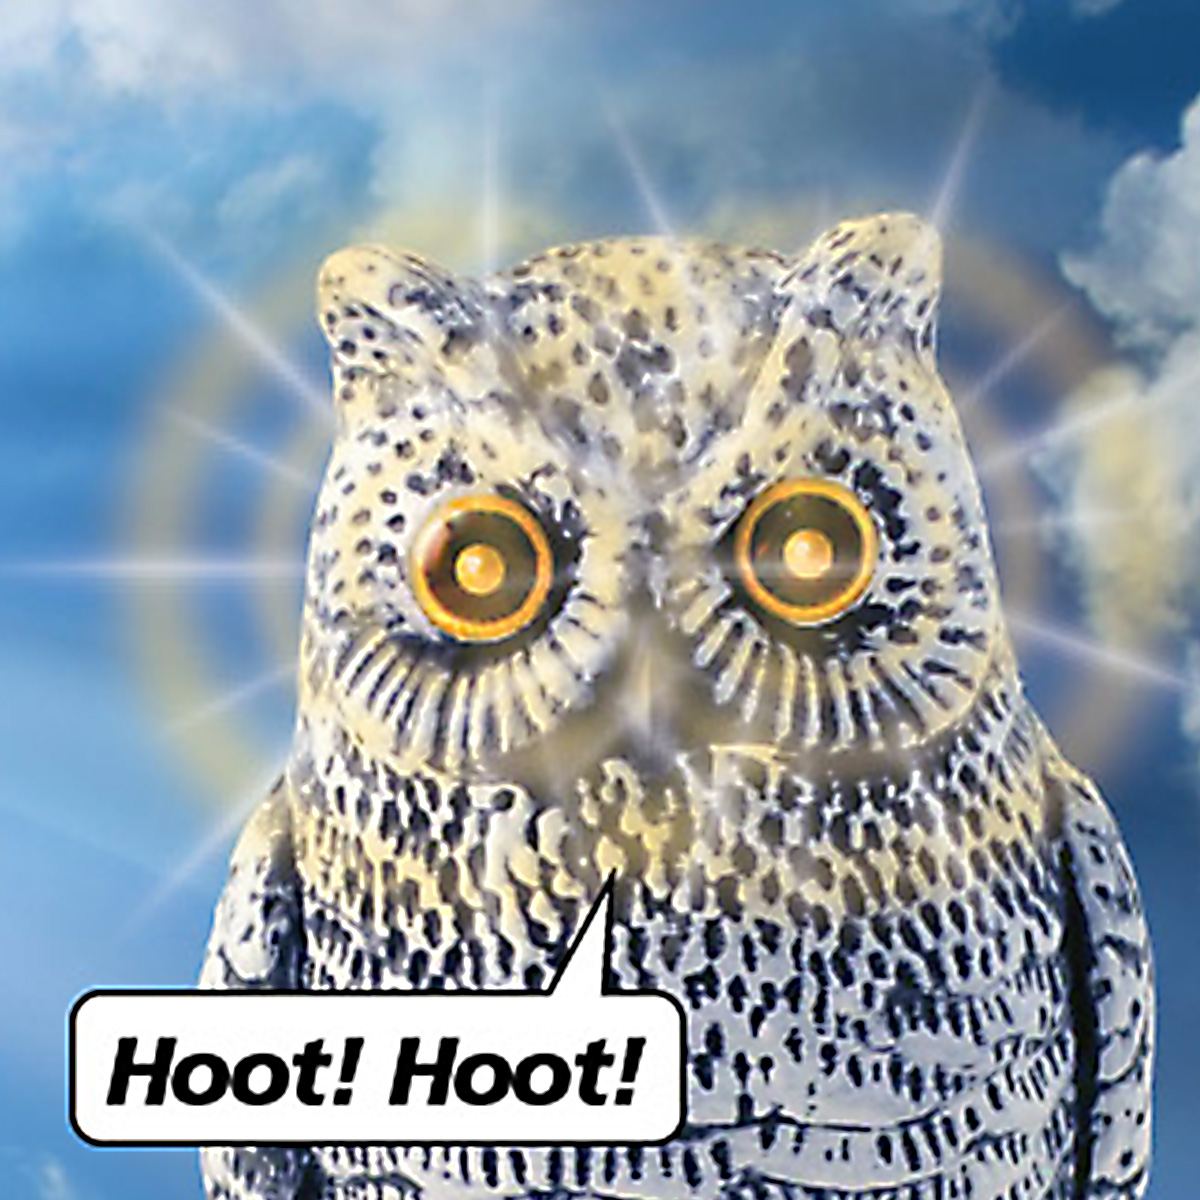 18405 motion sensor owl